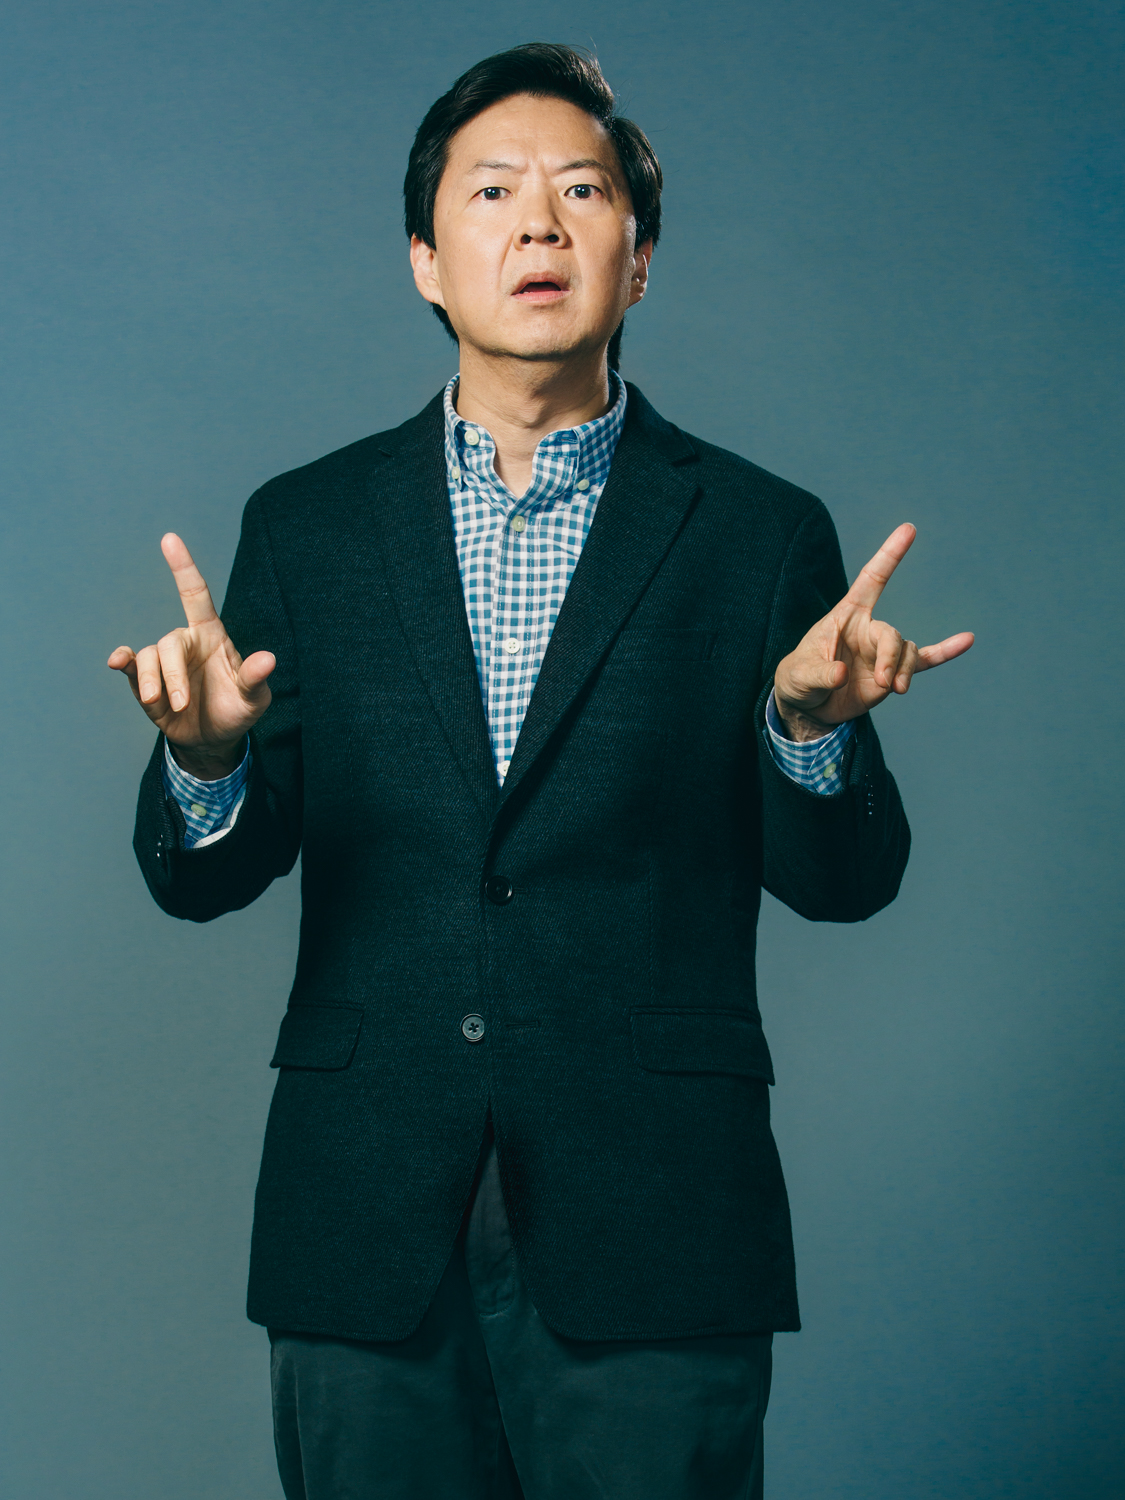 Ken Jeong: Actor, Comedian